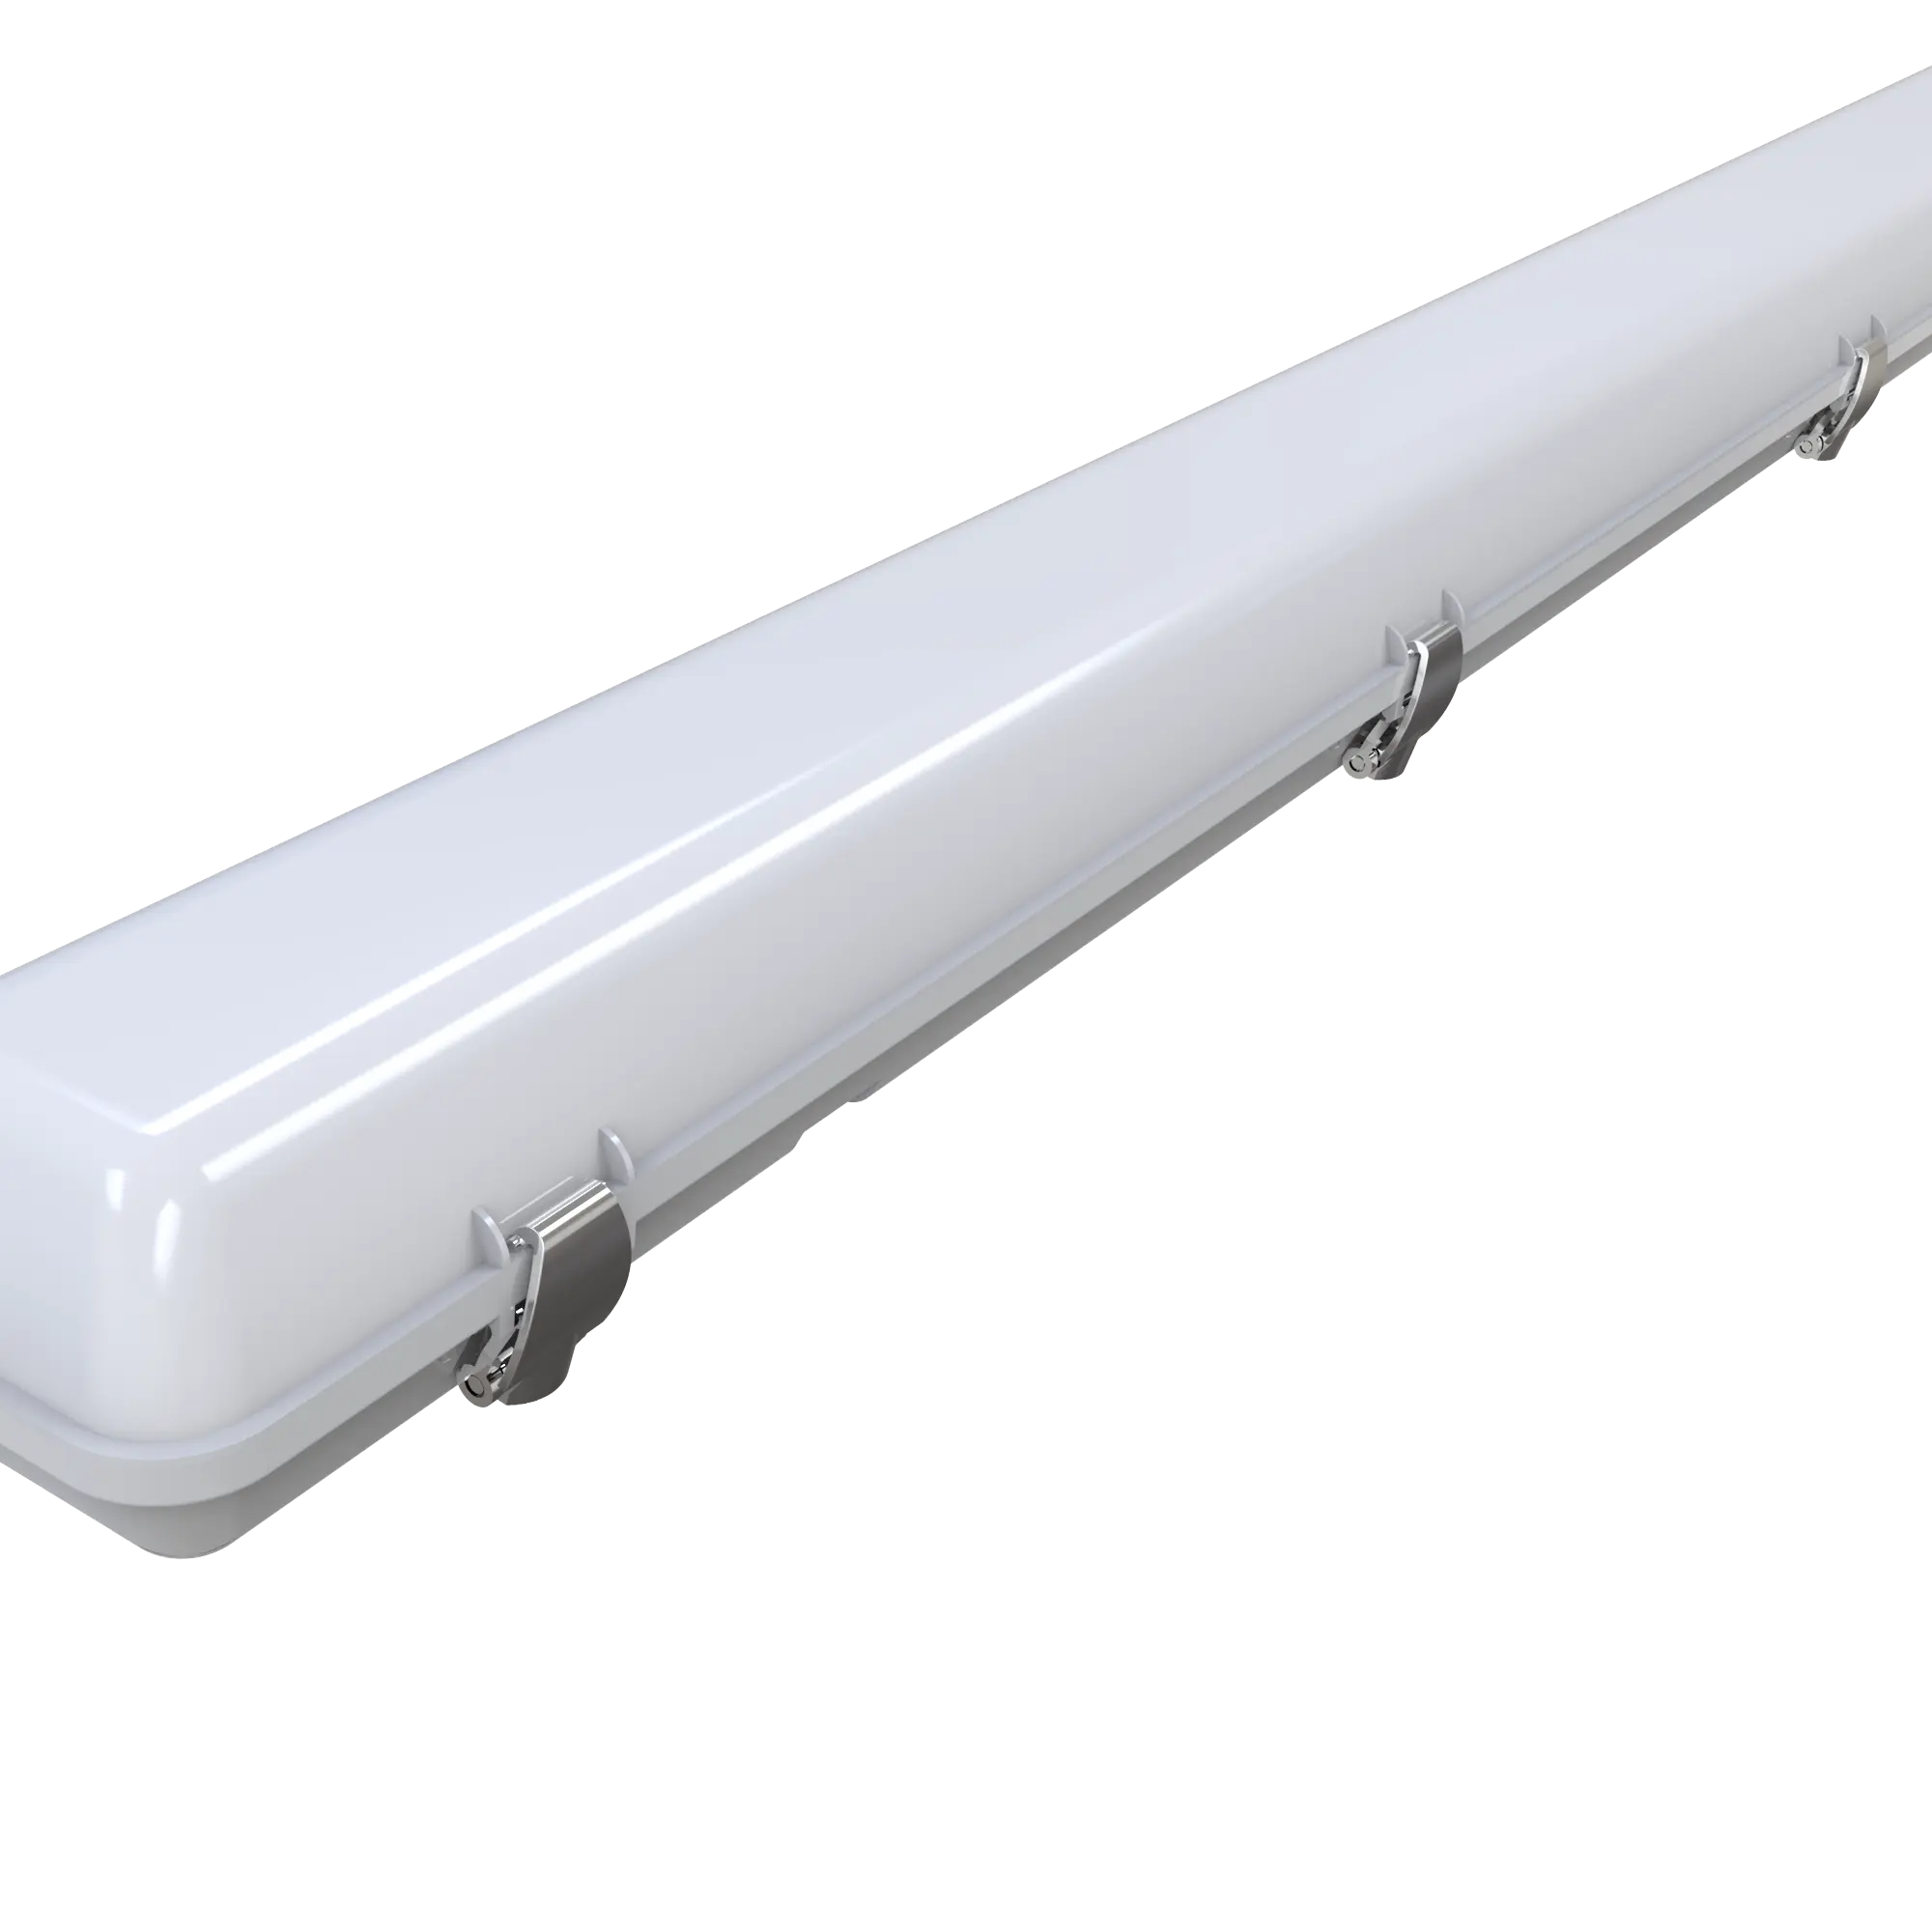 ShineLong Lampu Tahan Ledakan Ketat Vapor Panas Ip65 Linear 4Ft 40W Perlengkapan Pencahayaan Led DLC